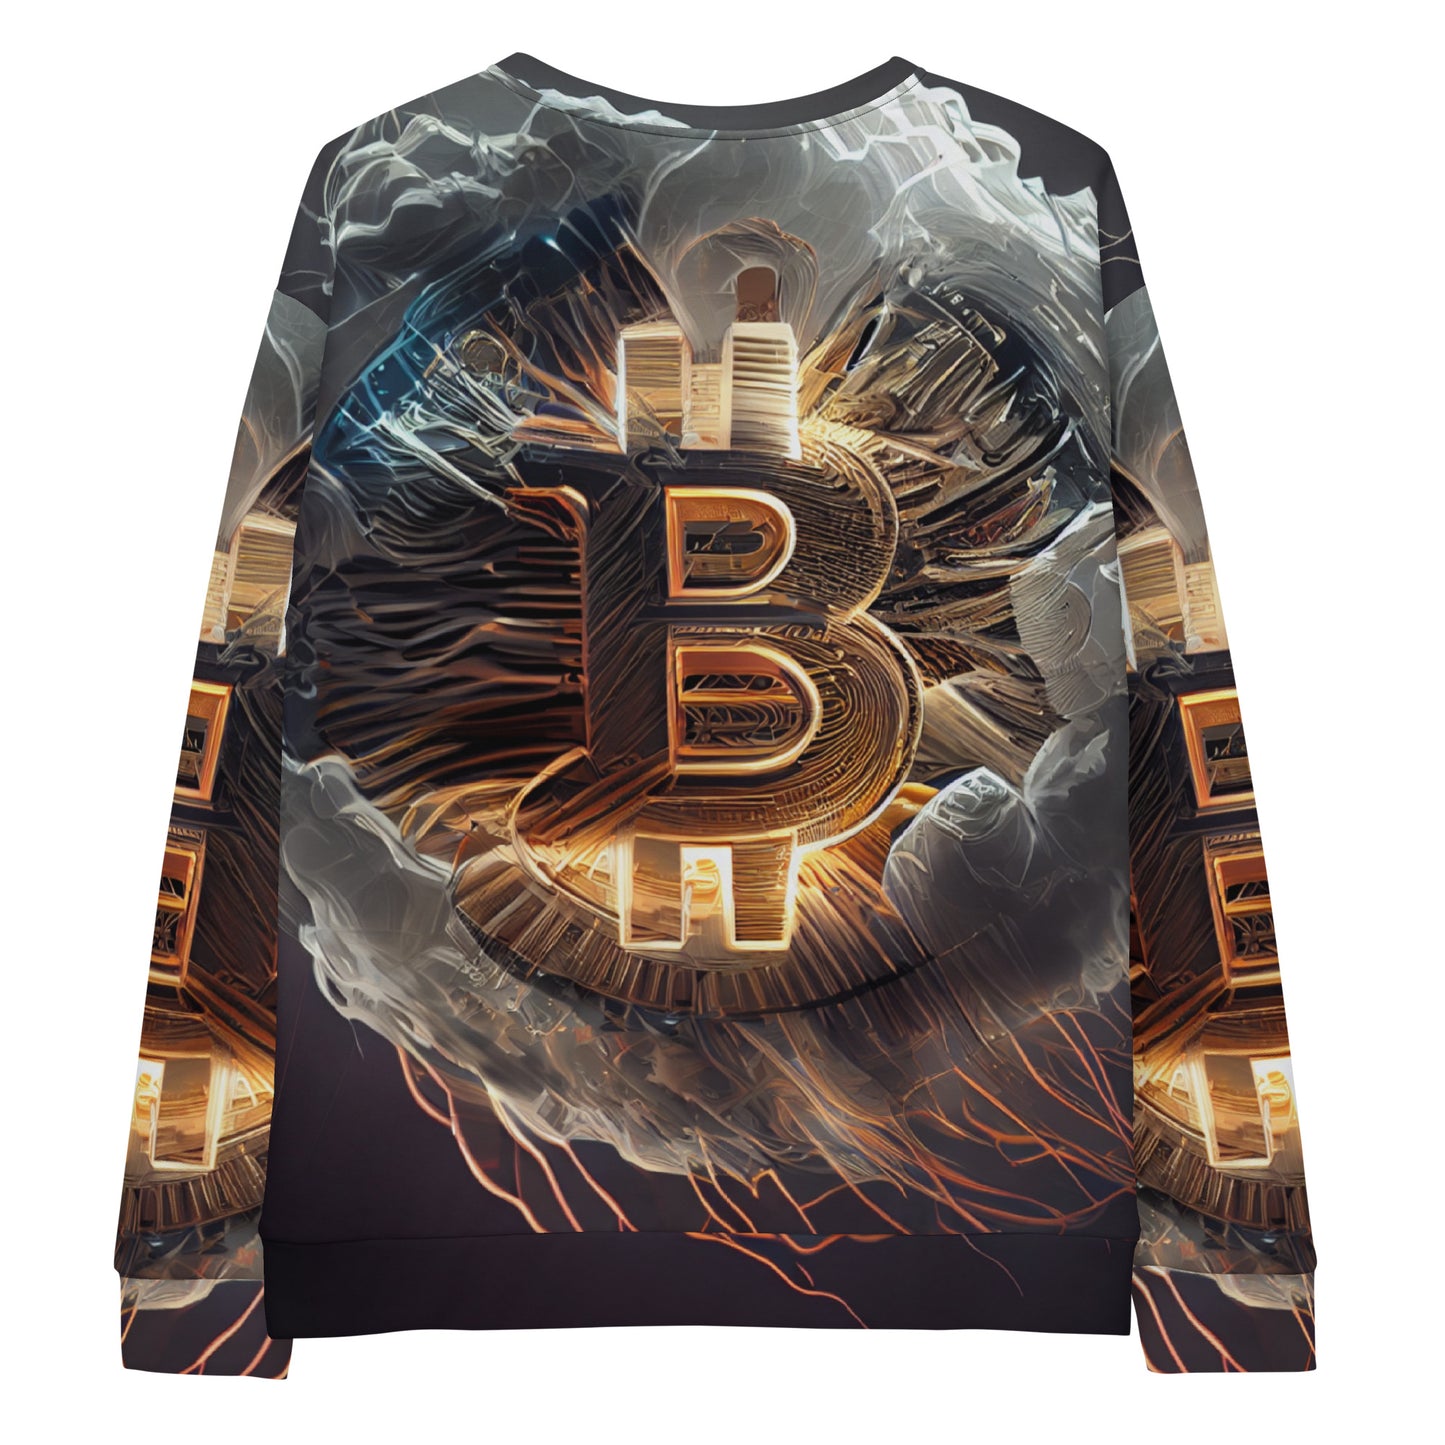 Bitcoin B Sweatshirt